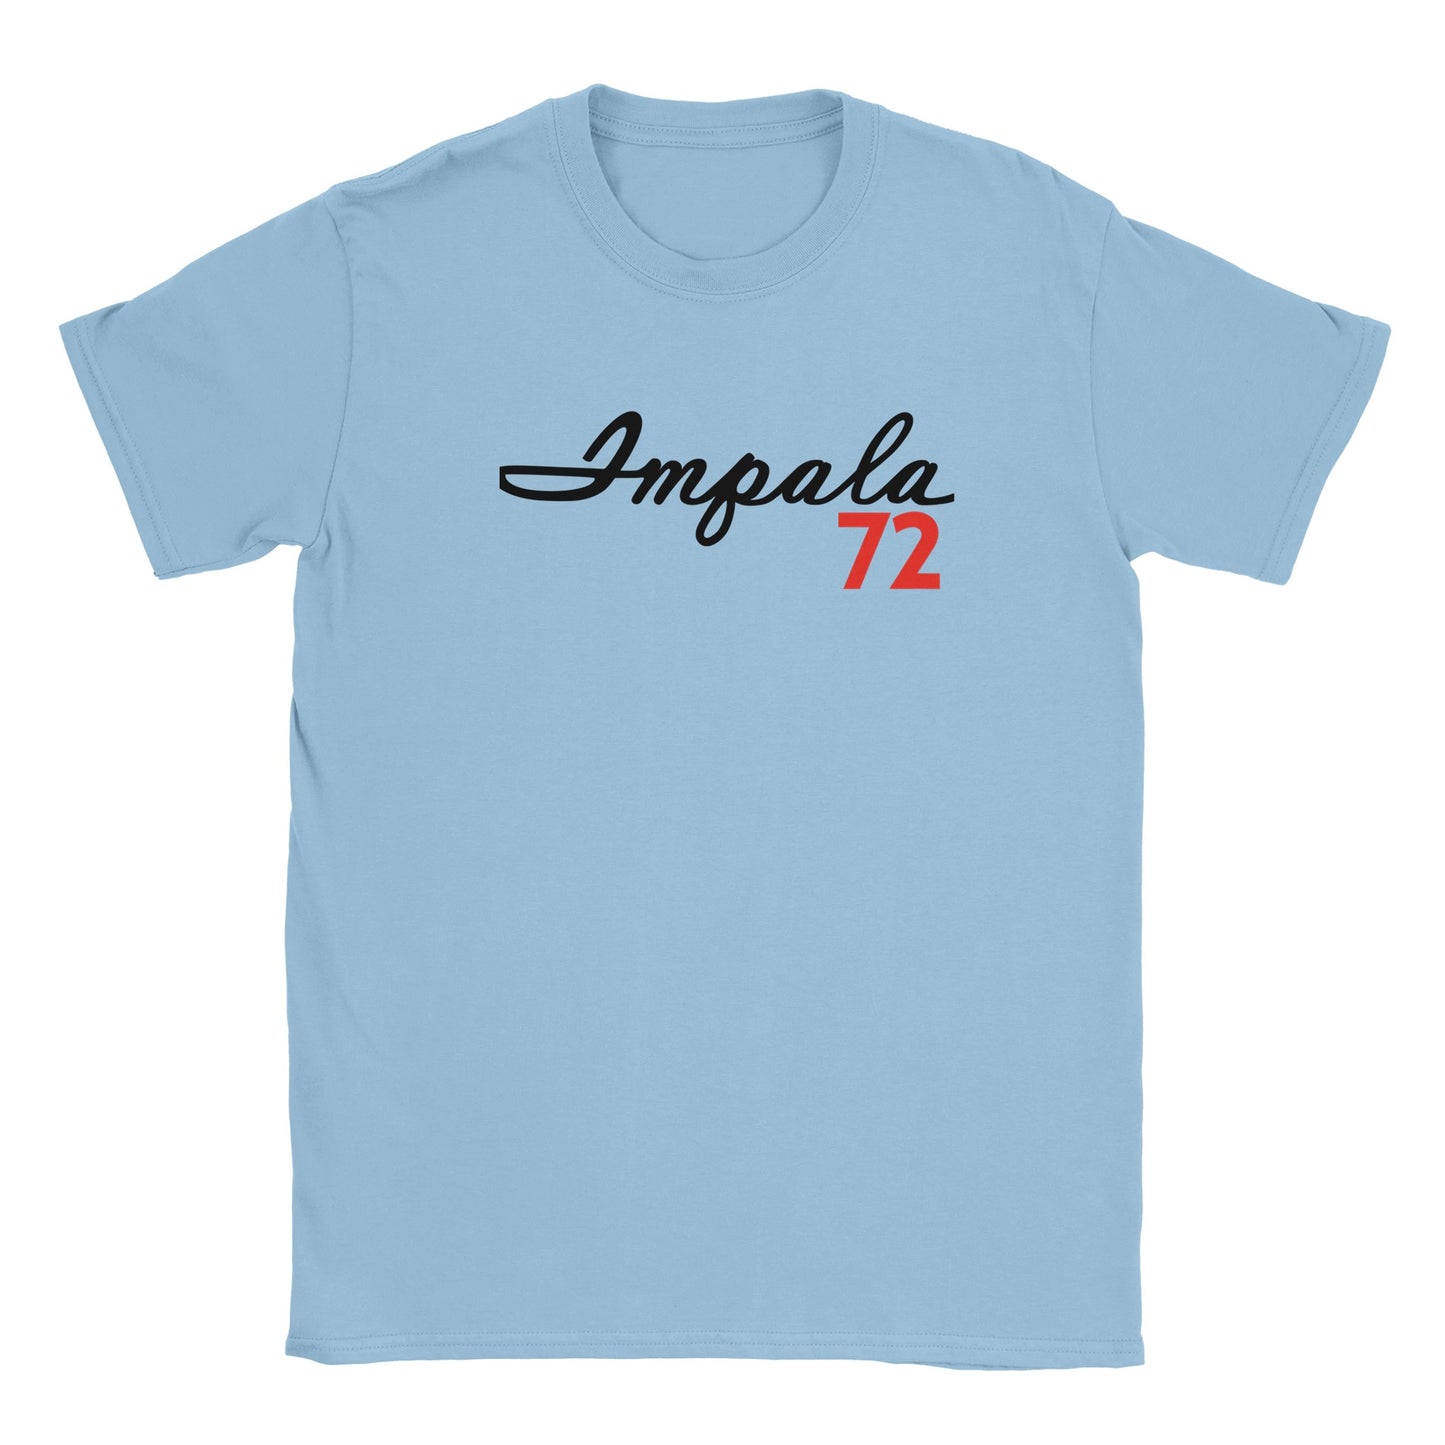 72 Impala T-shirt - Mister Snarky's